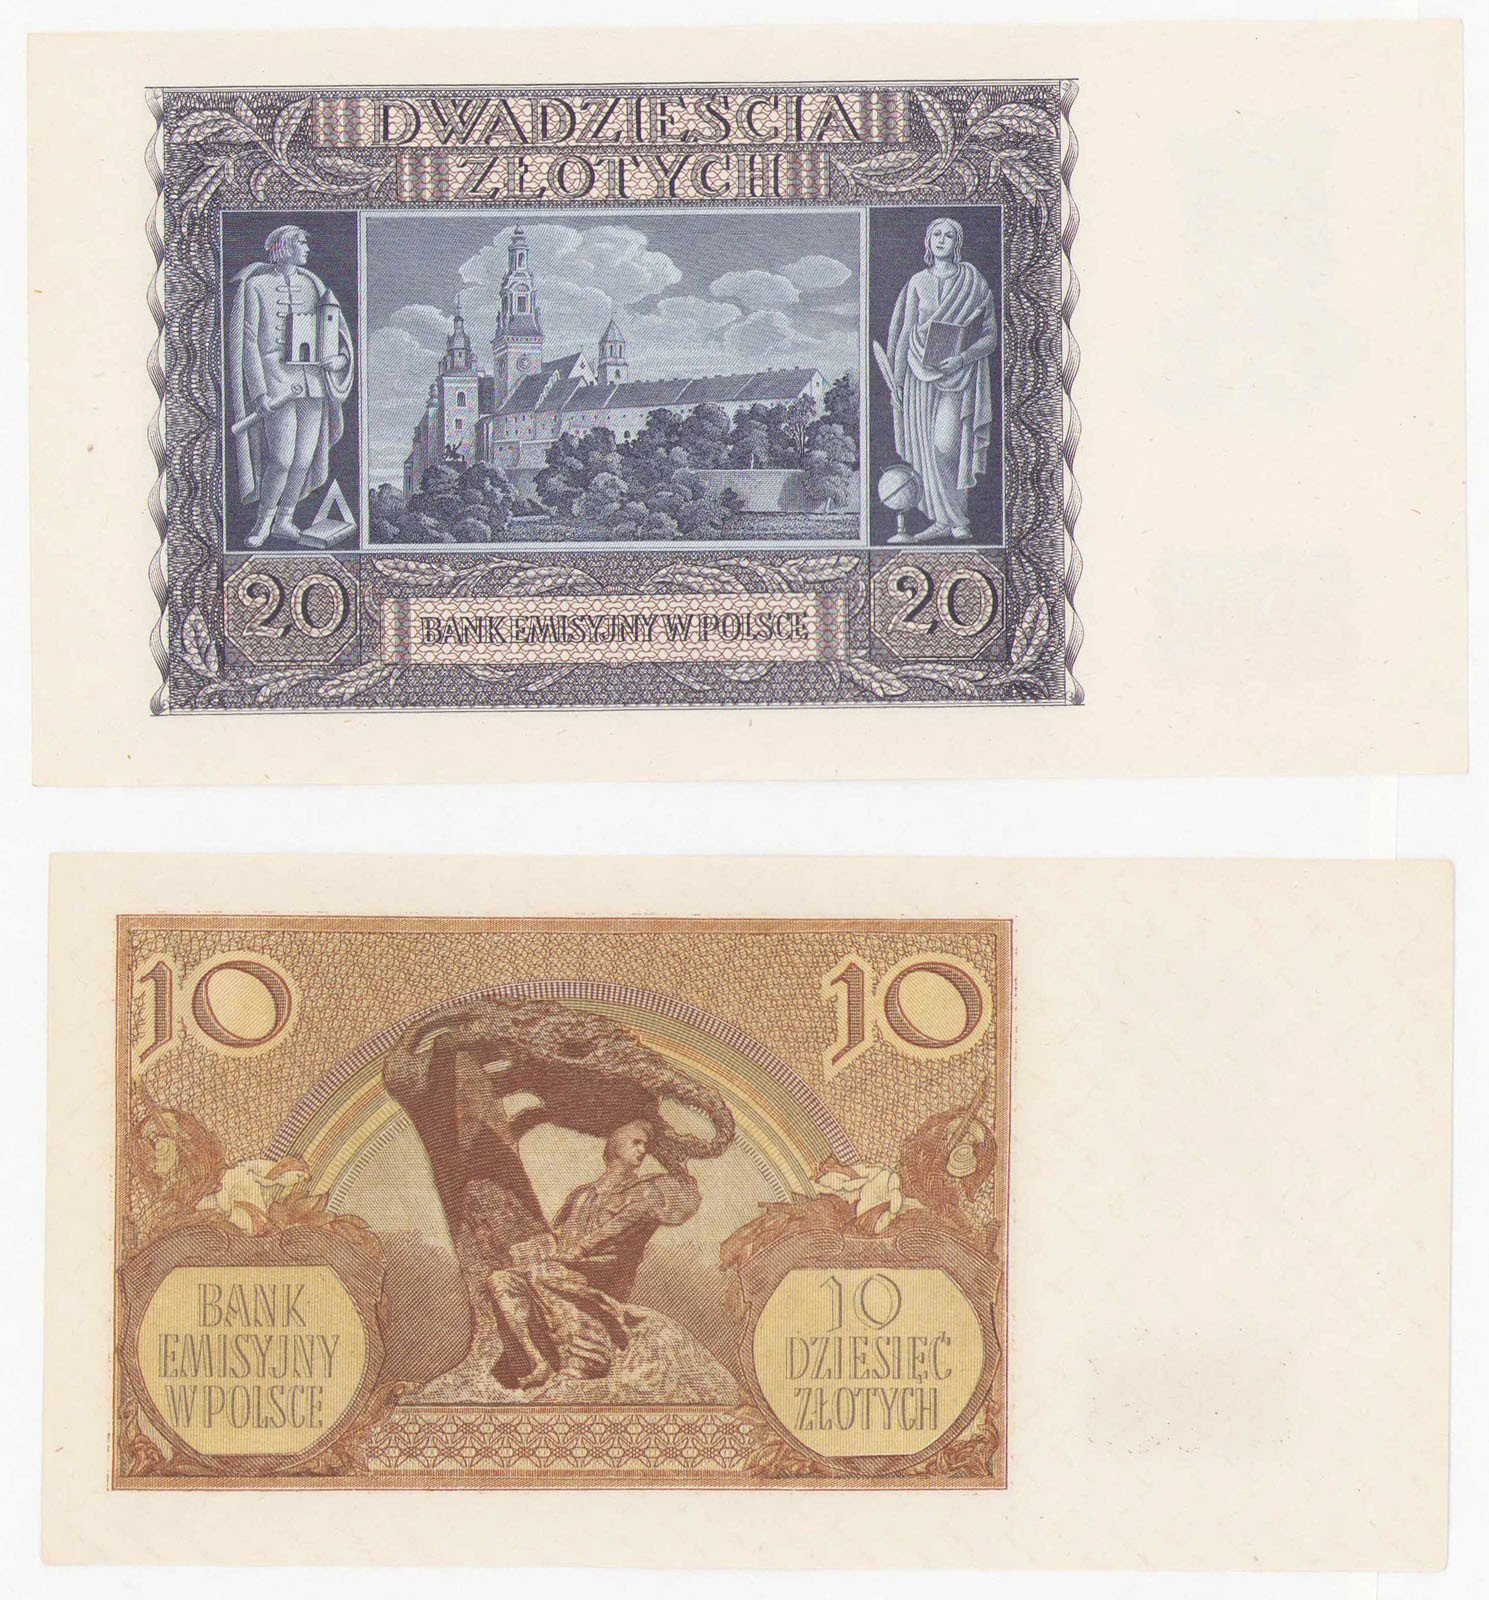 10 złotych 1940 seria M i 20 złotych 1940 seria G